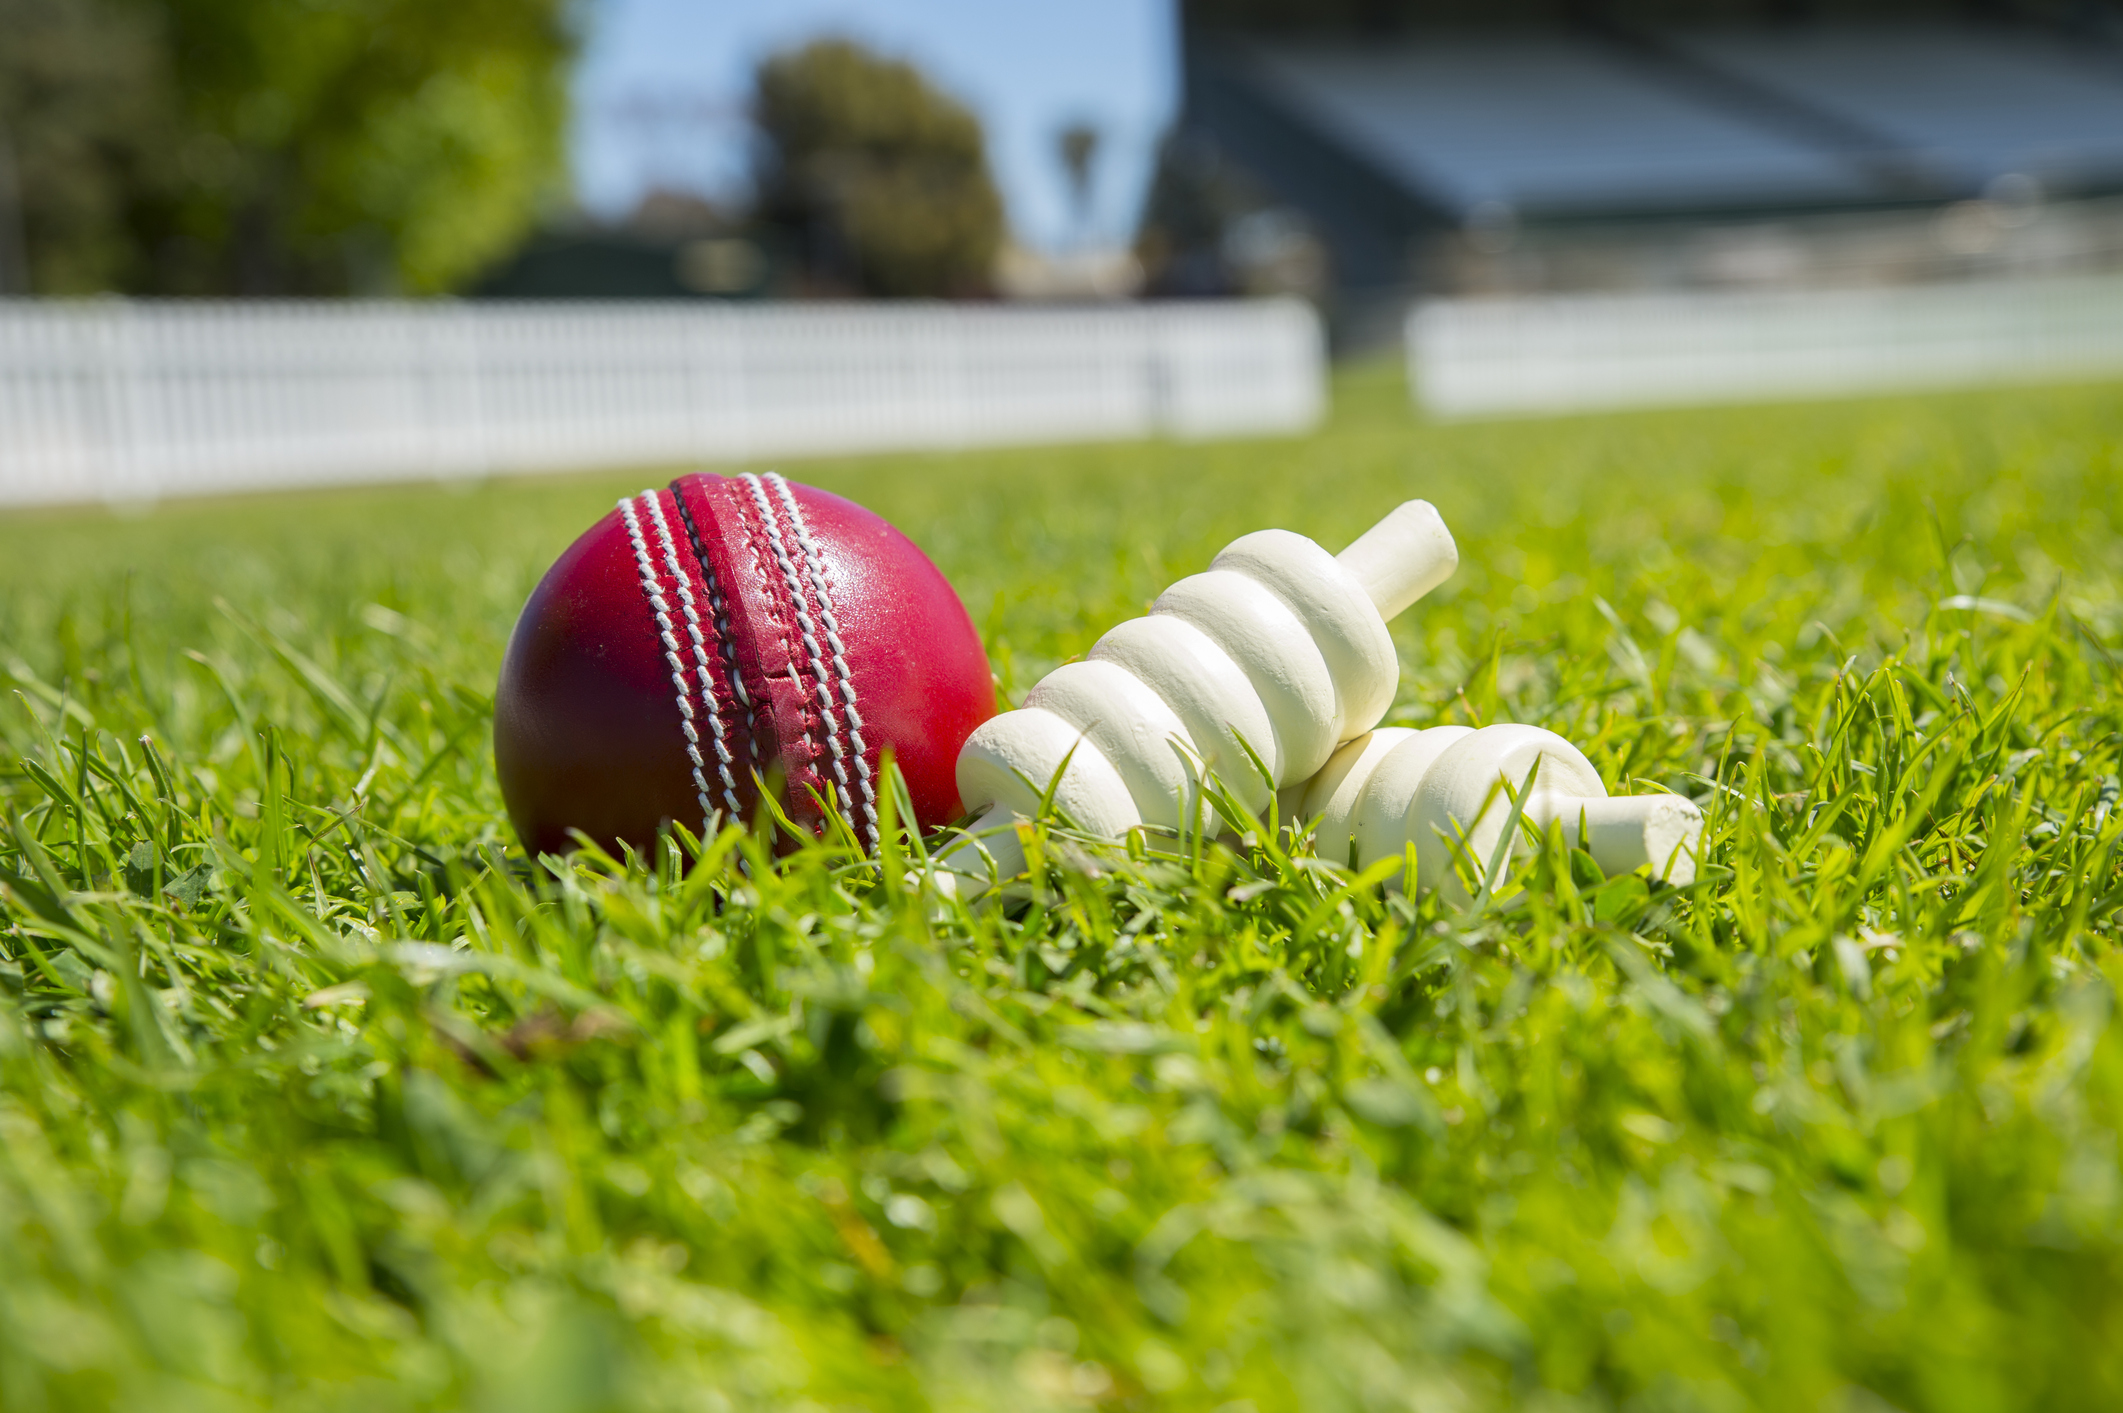 cricket wallpapers,grass,ball game,cricket ball,ball,lawn